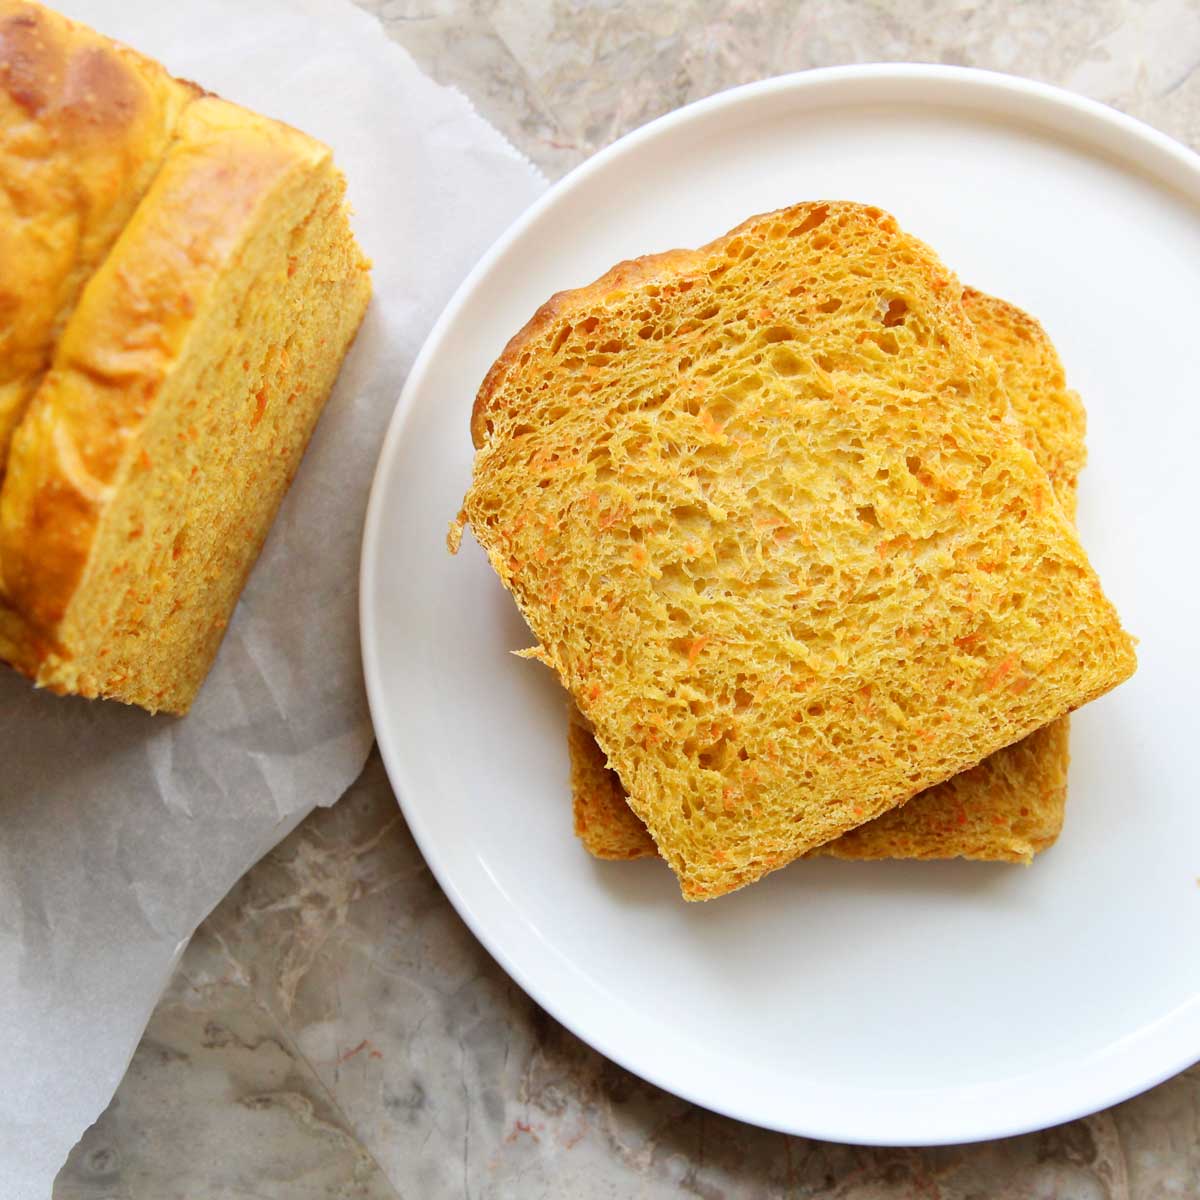 Healthy Carrot Sandwich Bread (Yeast Bread) Recipe - yeast bread